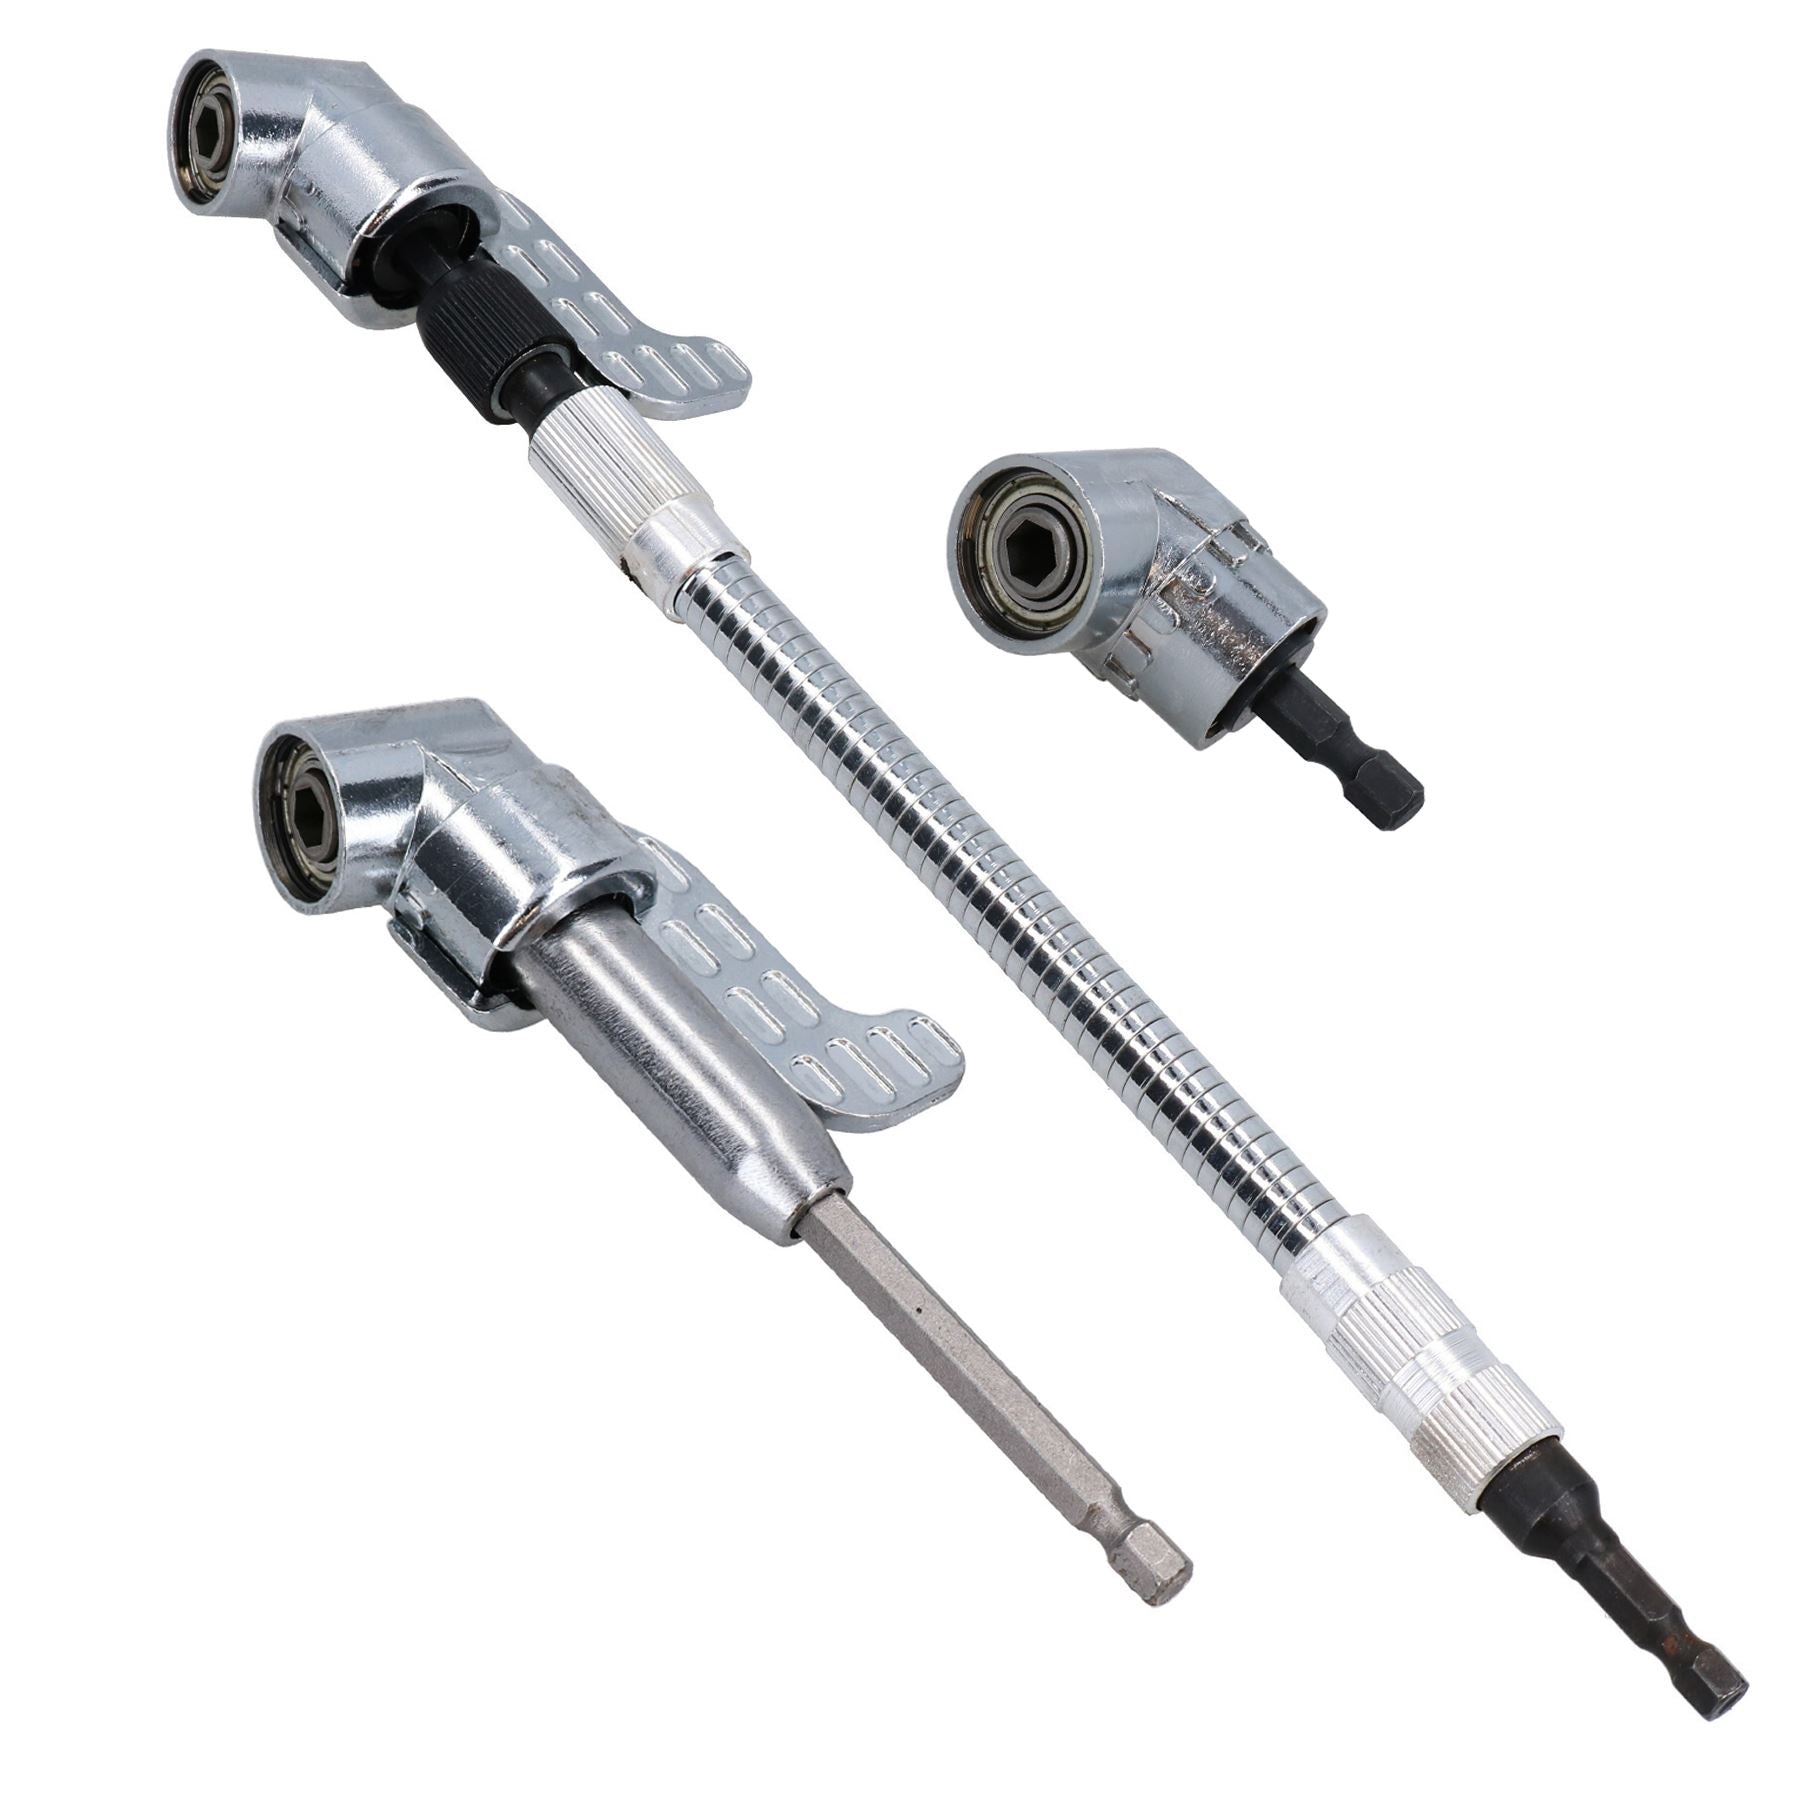 Aluminium Right Angle Drill Attachment Bit 3/8 Chuck Key Adaptor